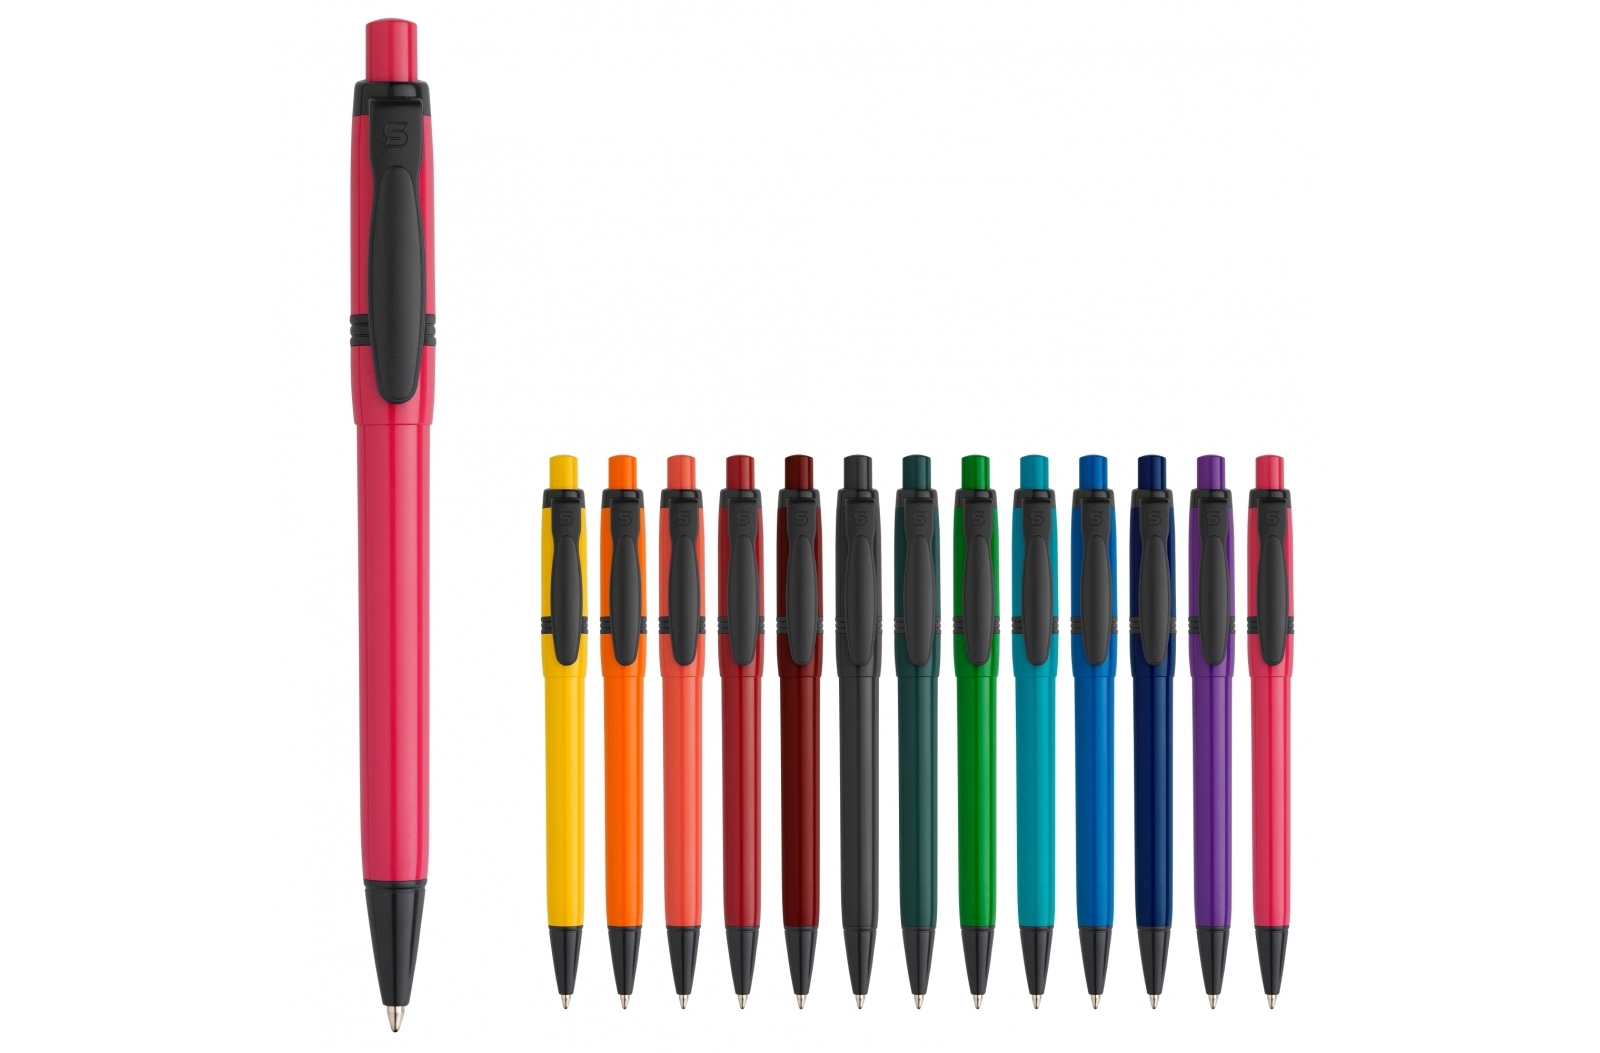 Bolígrafo de color sólido Olly con componentes de color - Hinstock - Albero Bajo